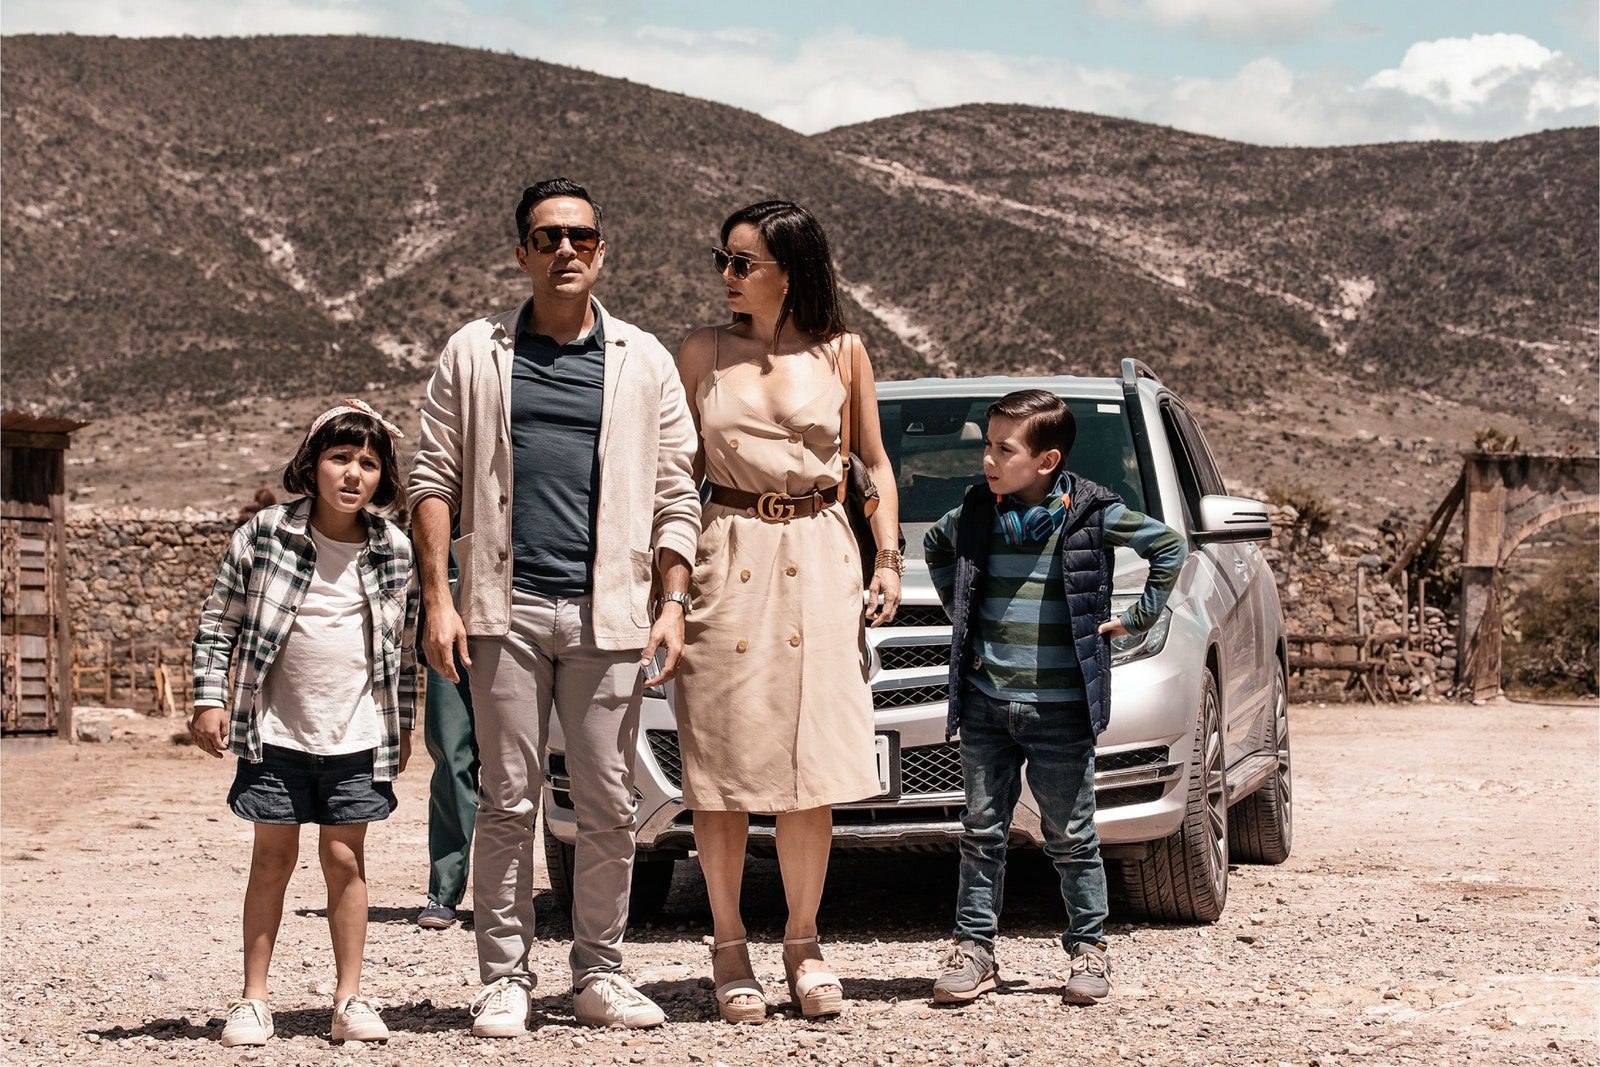 Saiba tudo sobre Viva o México (¡Que Viva México!) filme que está no TOP10 da Netflix 5